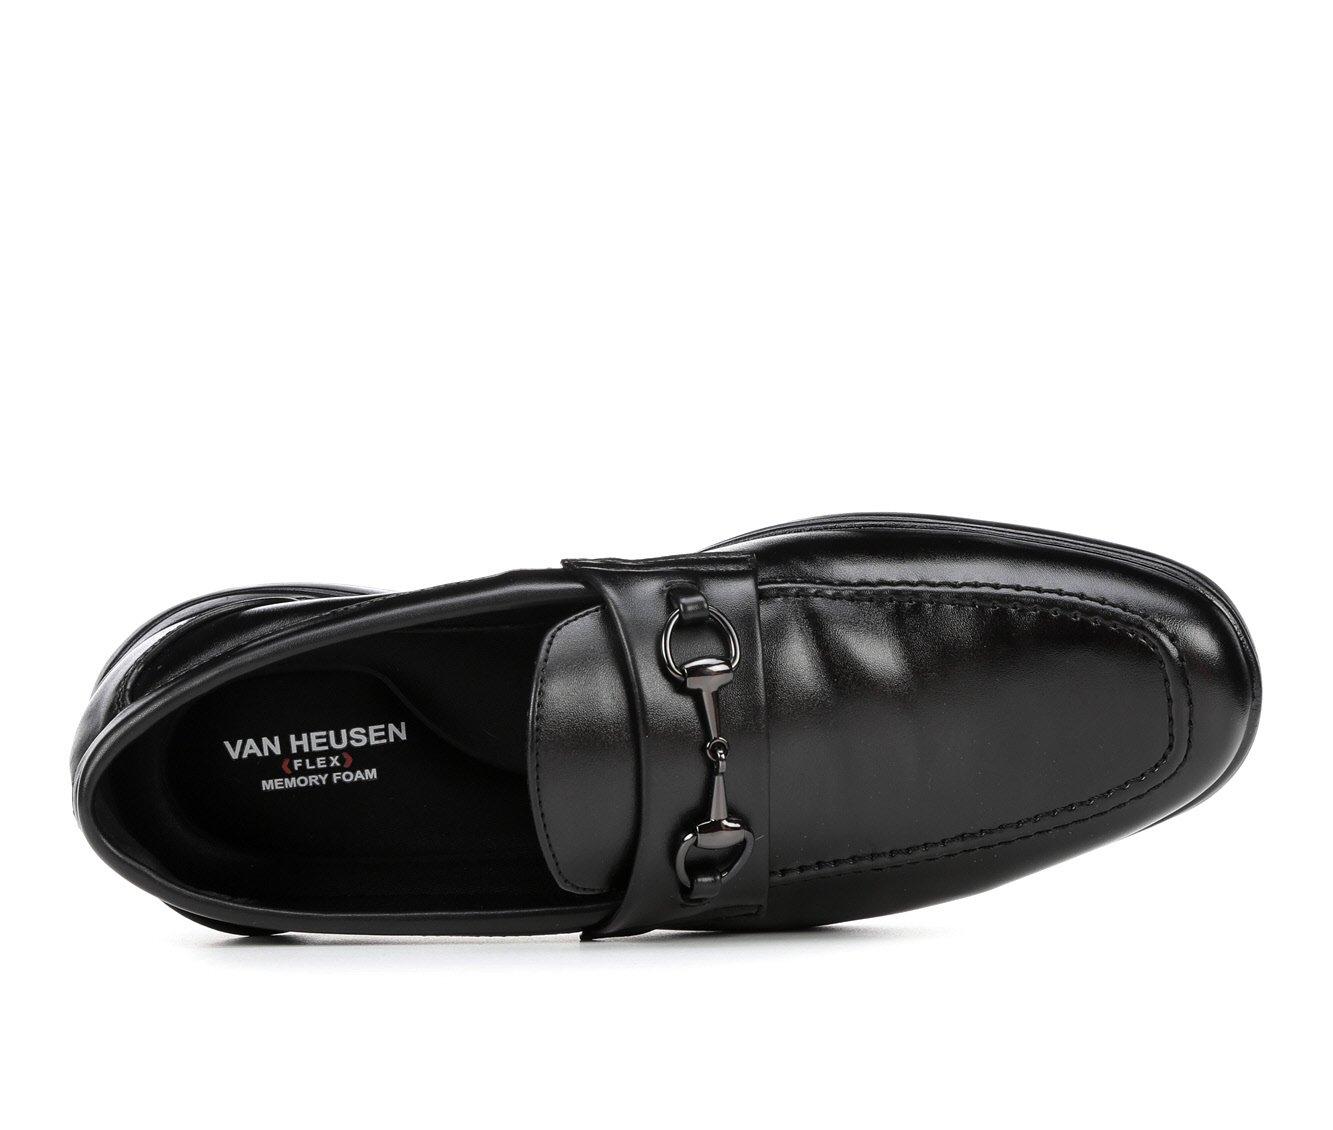 VAN HEUSEN Black Racer Slip-On Loafer Driving Shoes Moccasins 10 1